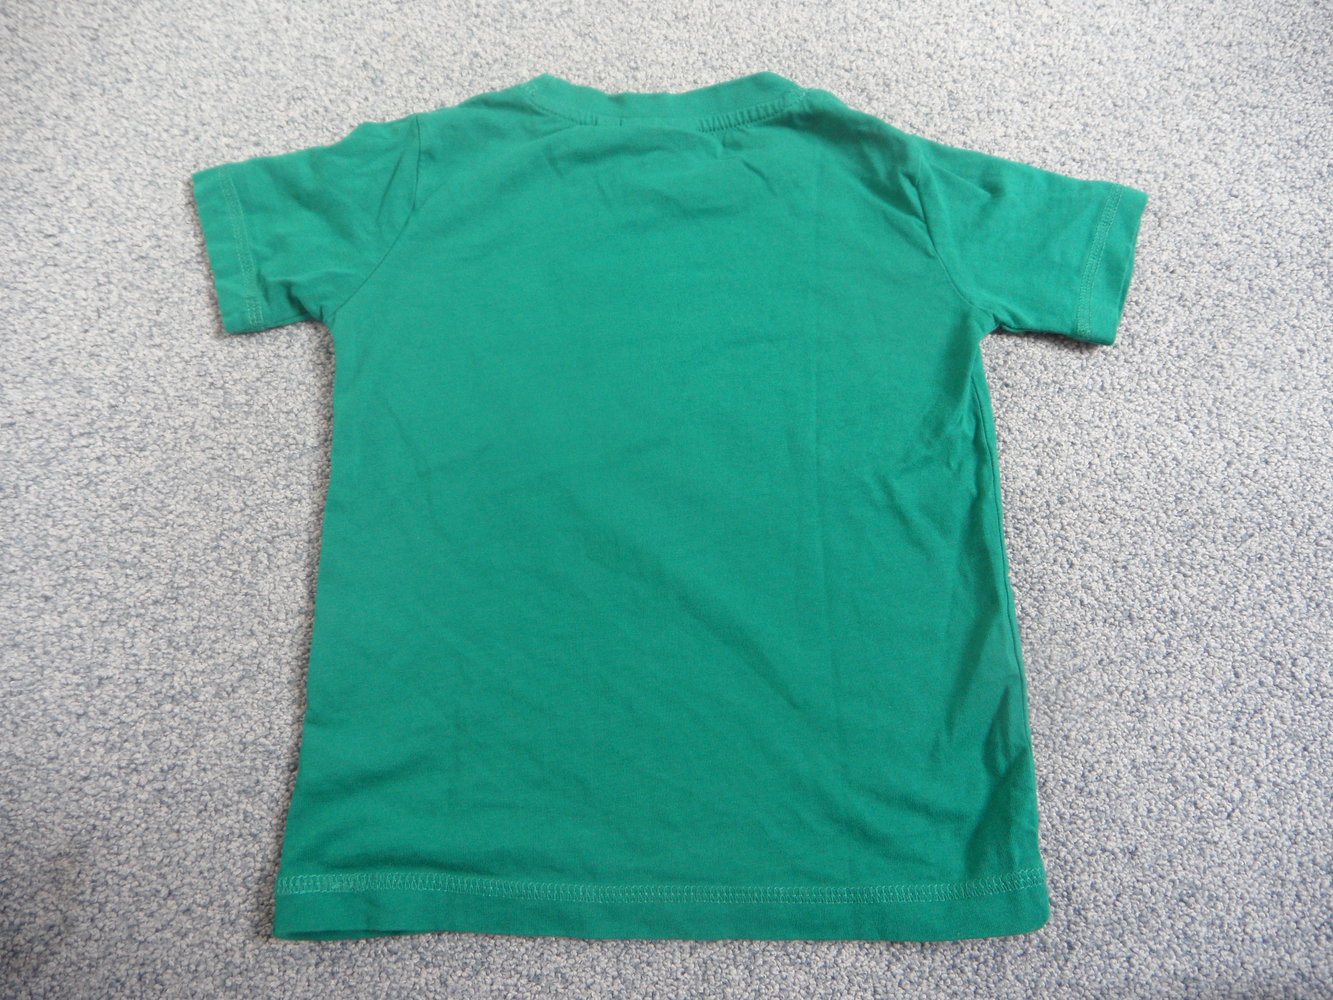 Tom Tailor T-Shirt Schokolade 92/98